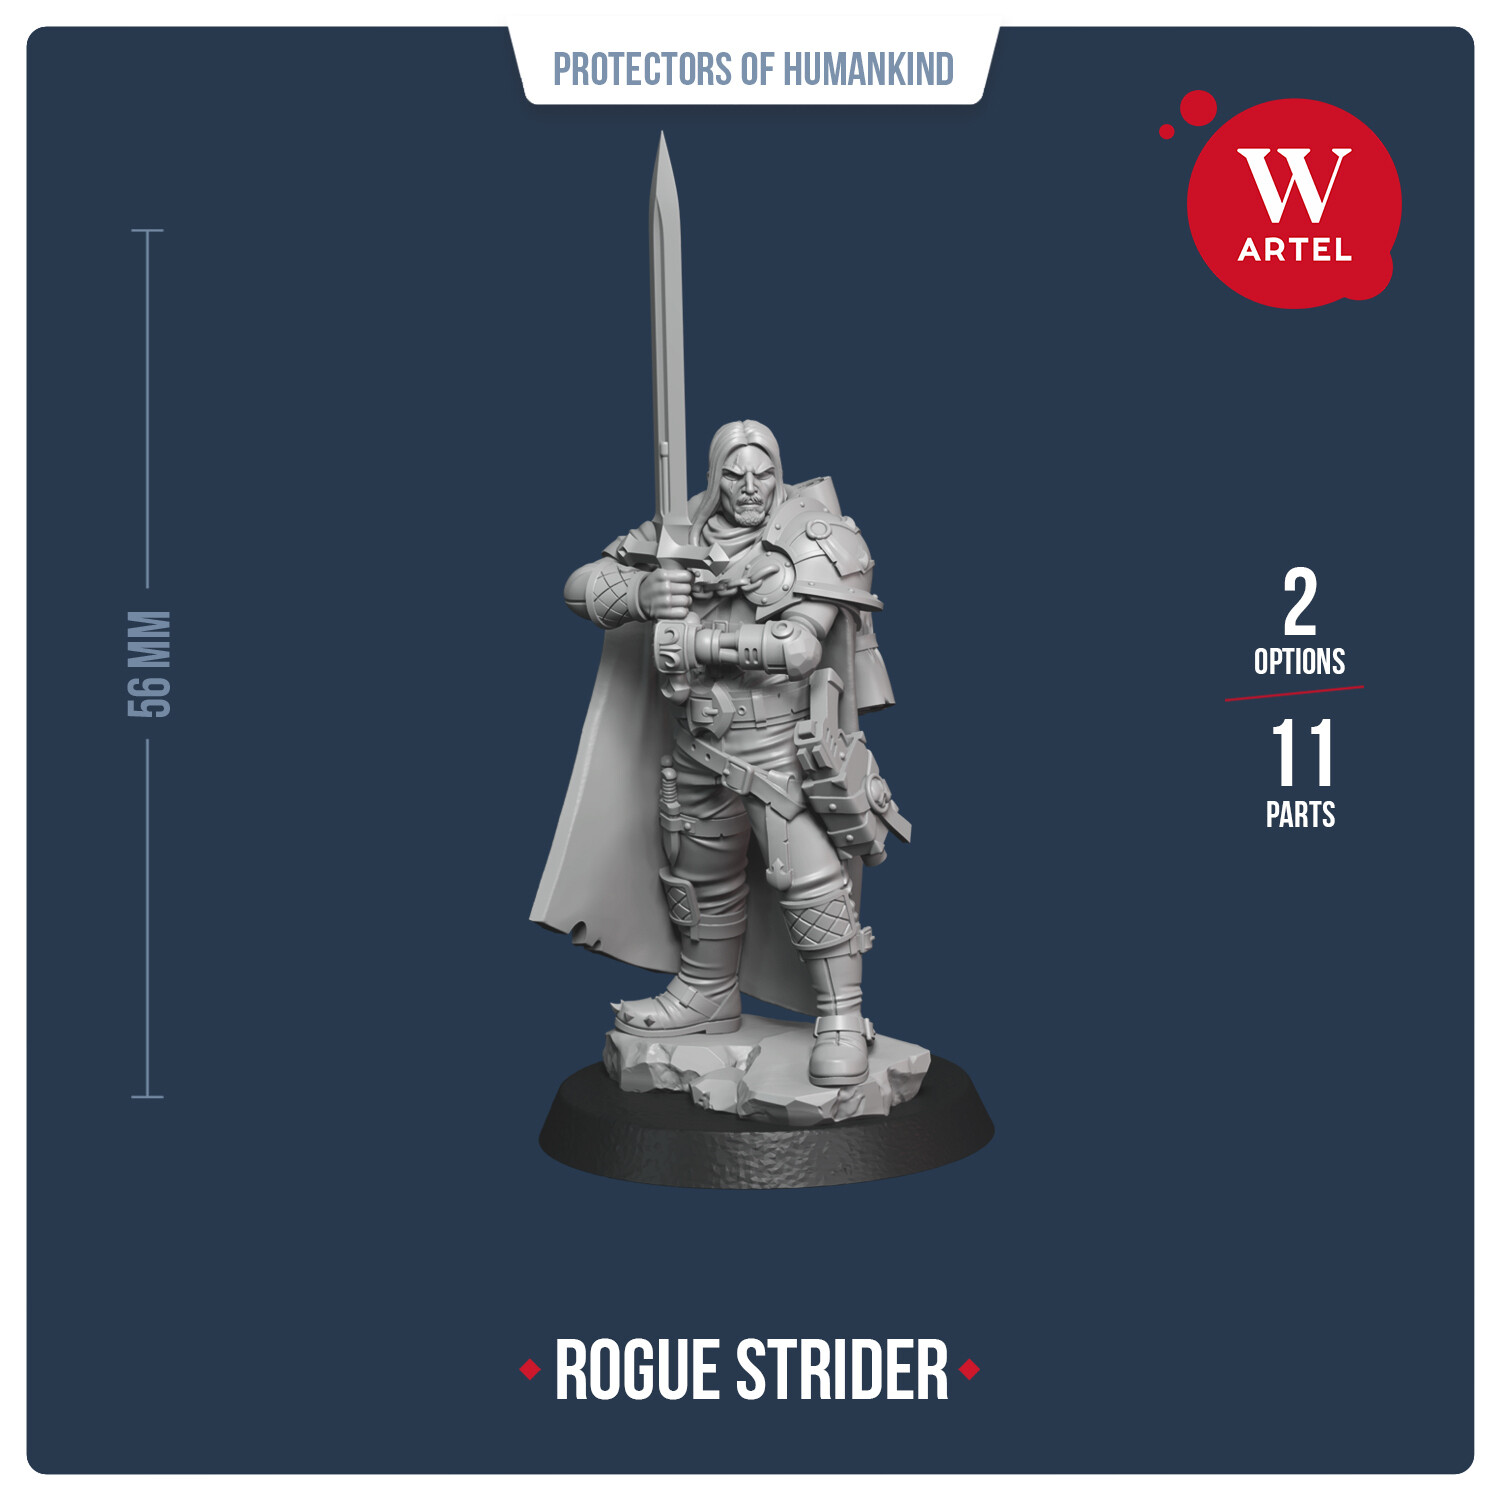 Rogue Strider